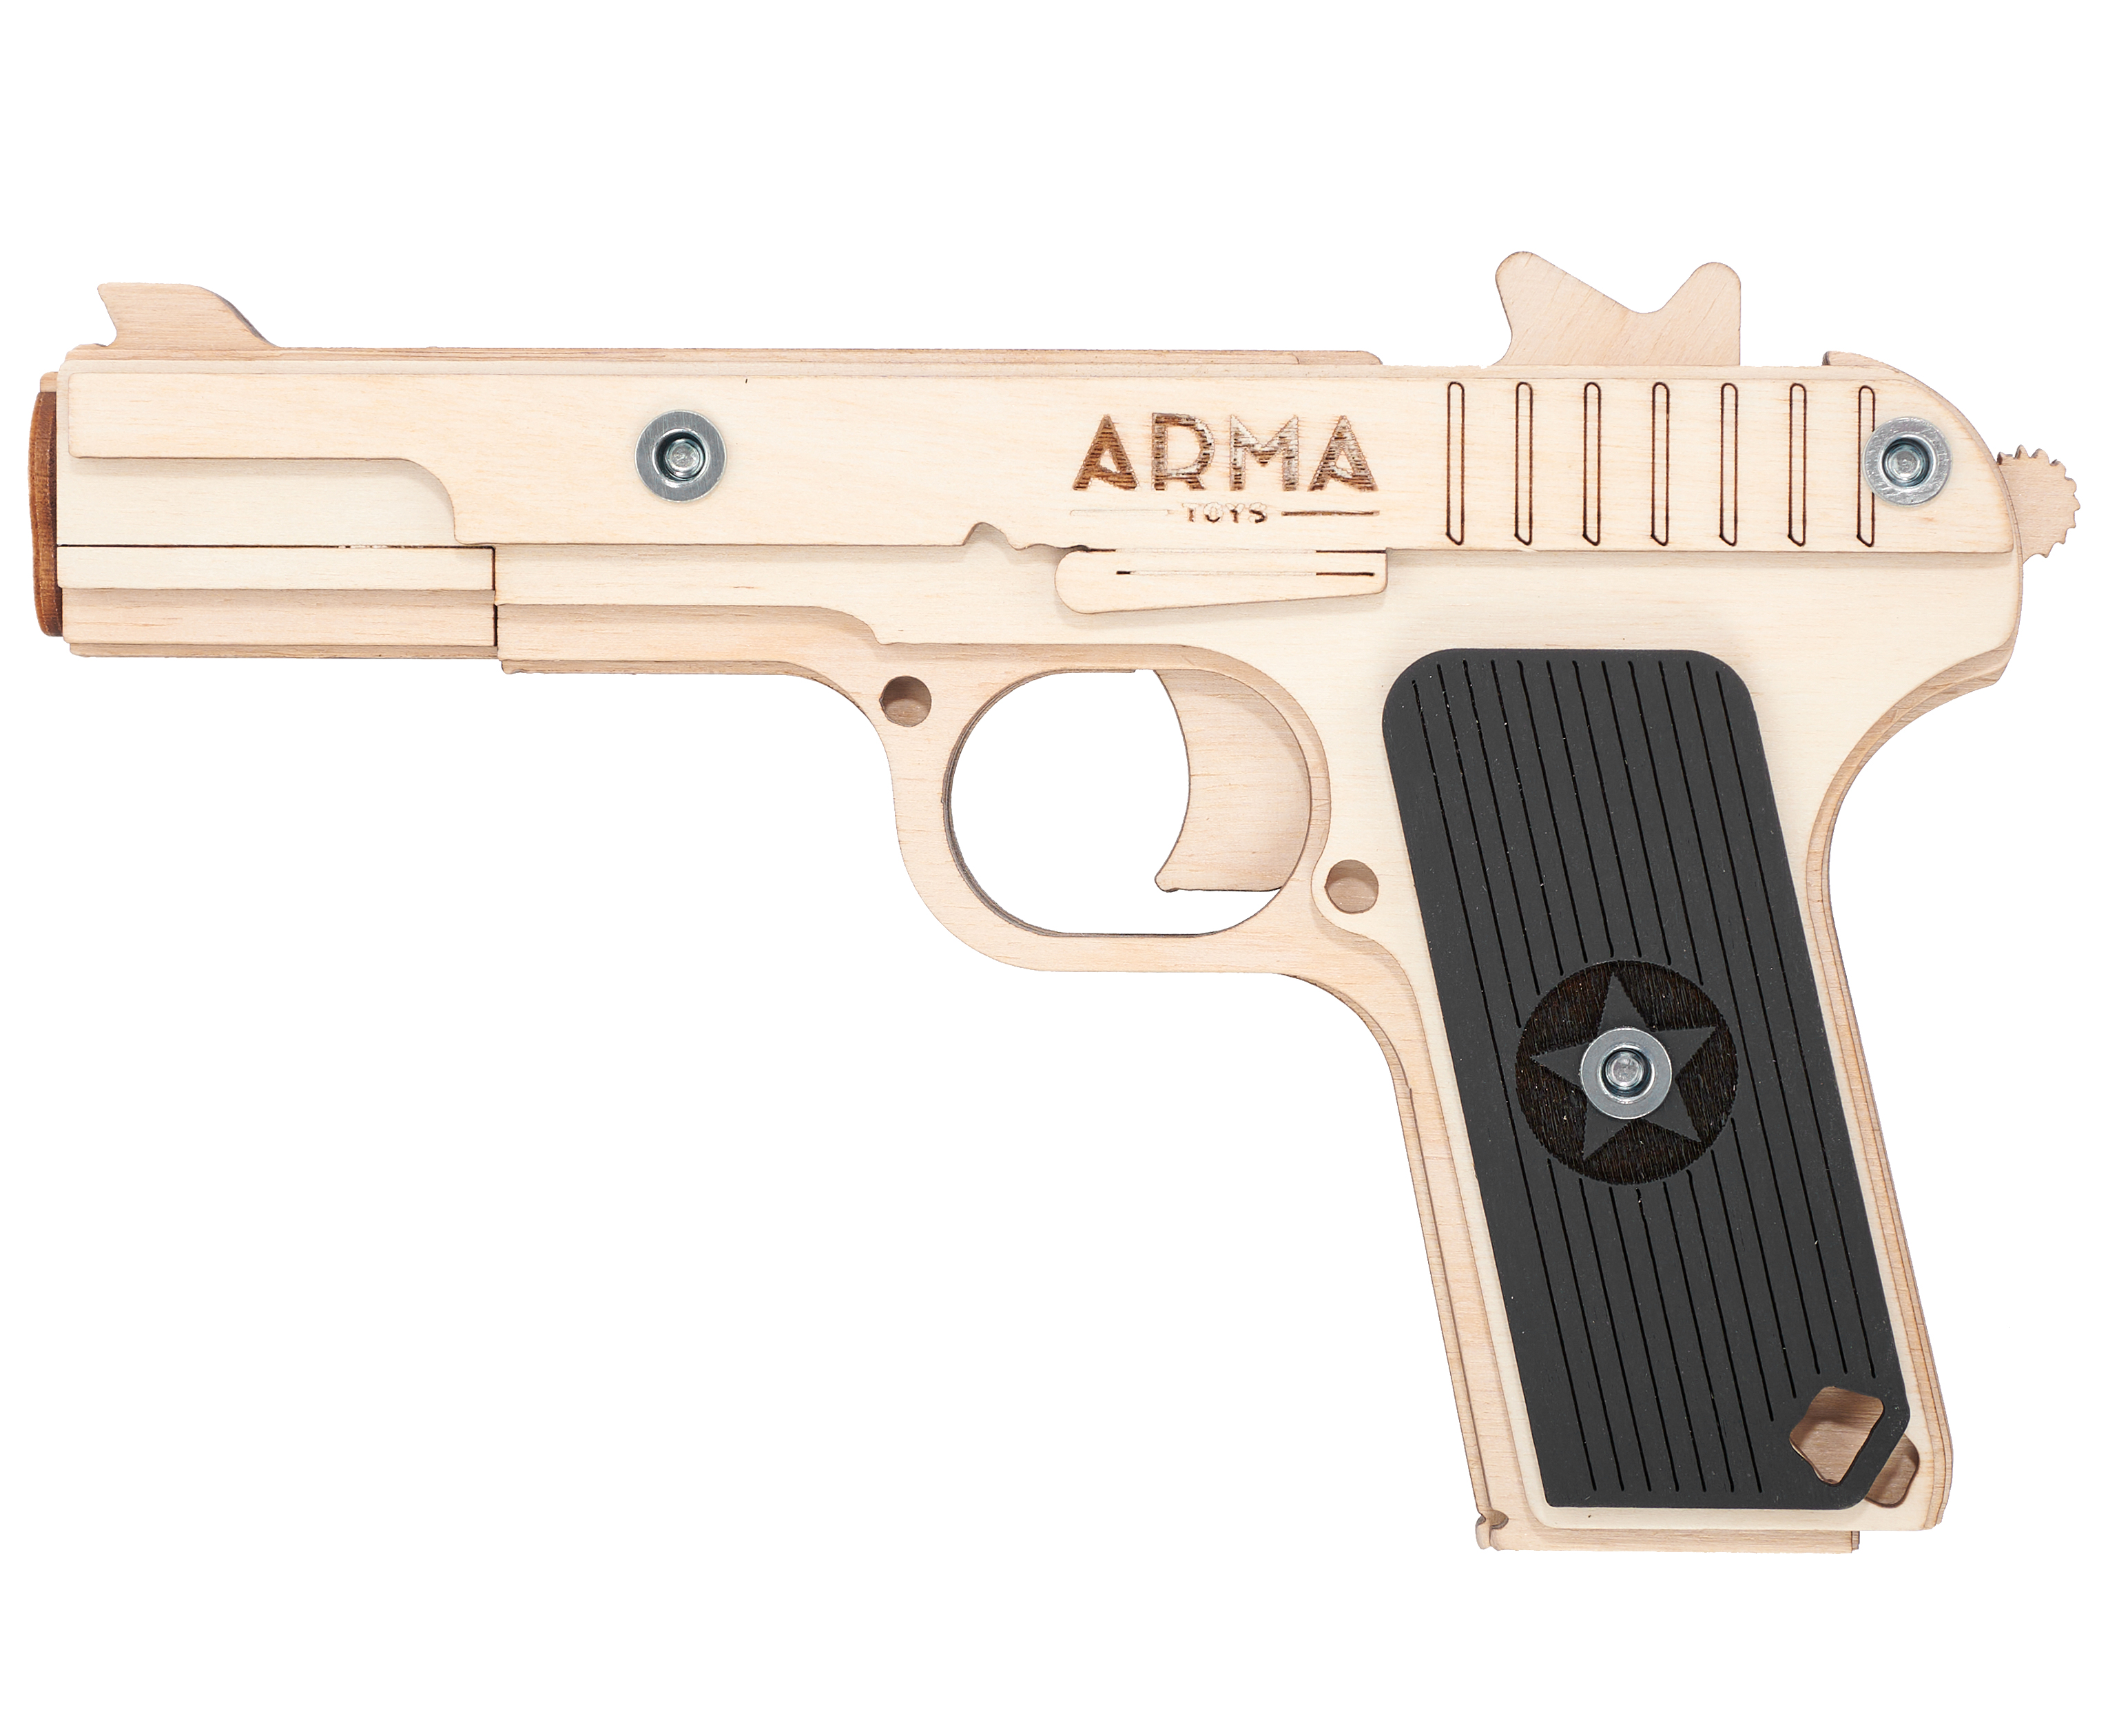 Резинкострел игрушечный Arma toys пистолет ТТ макет, Токарев, AT019 резинкострел arma toys пистолет пулемет ппш макет окрашенный at007k